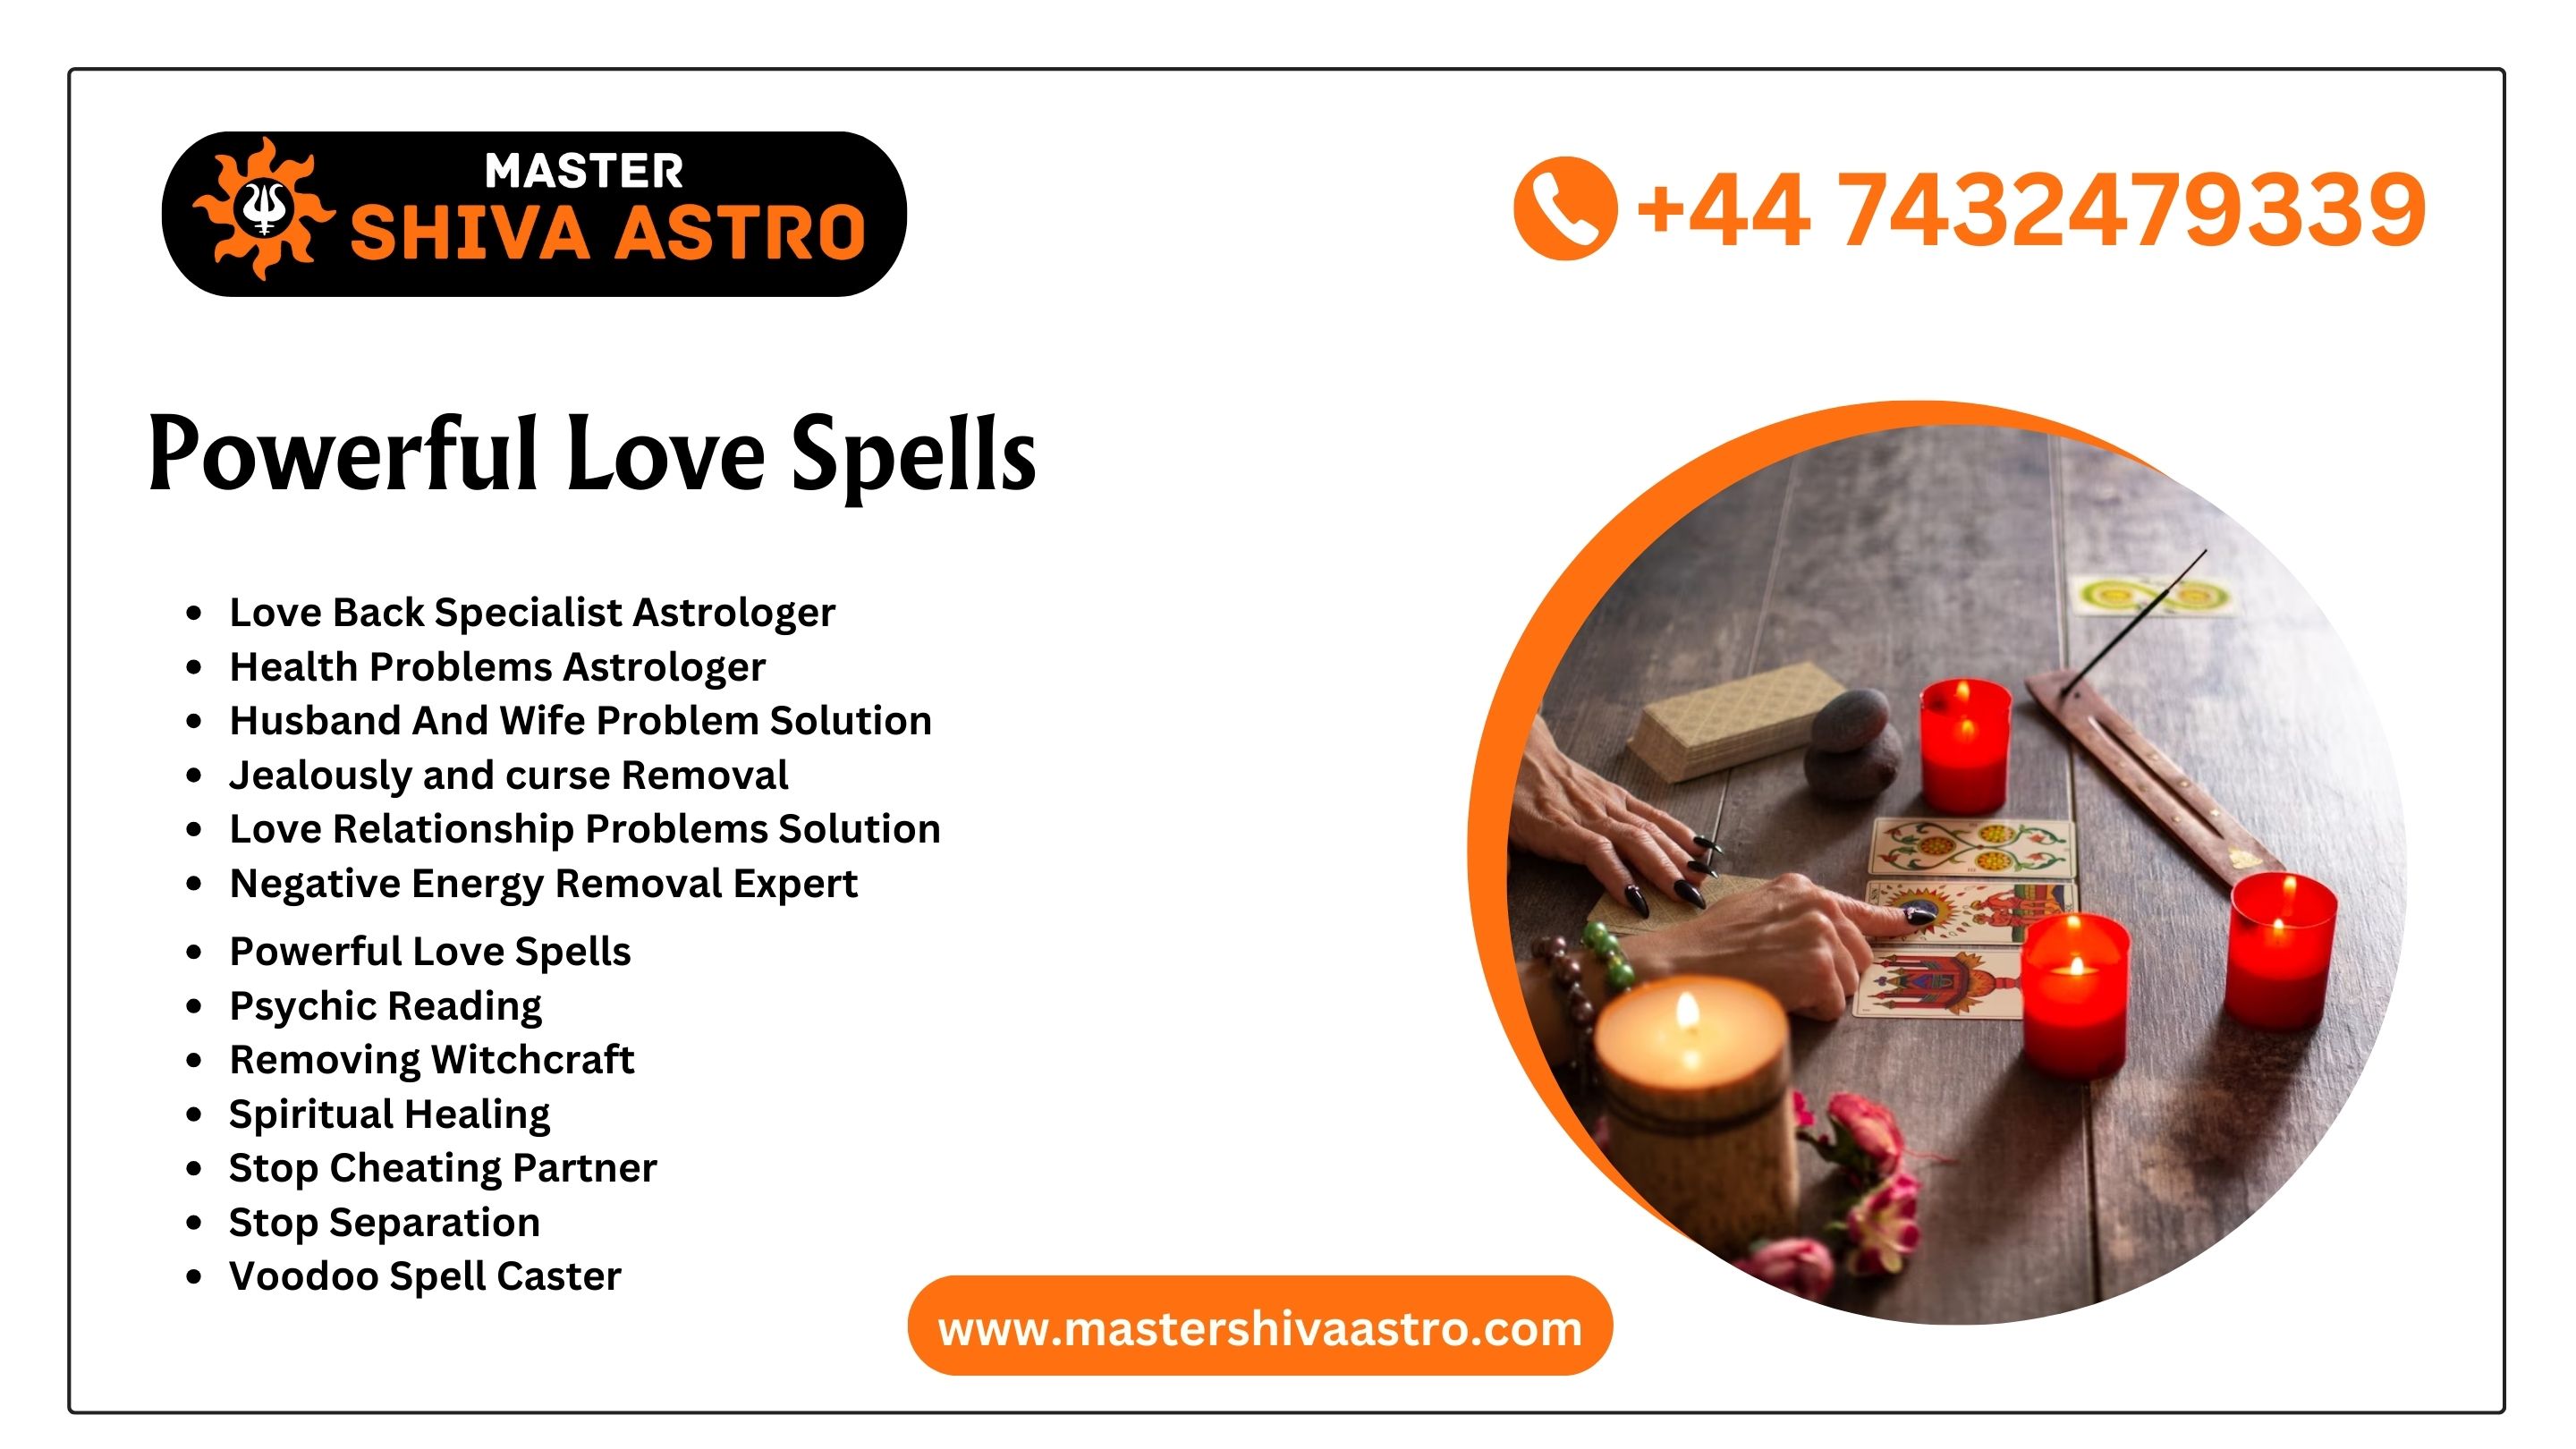 Love Spell Problems Solution - Master Shiva